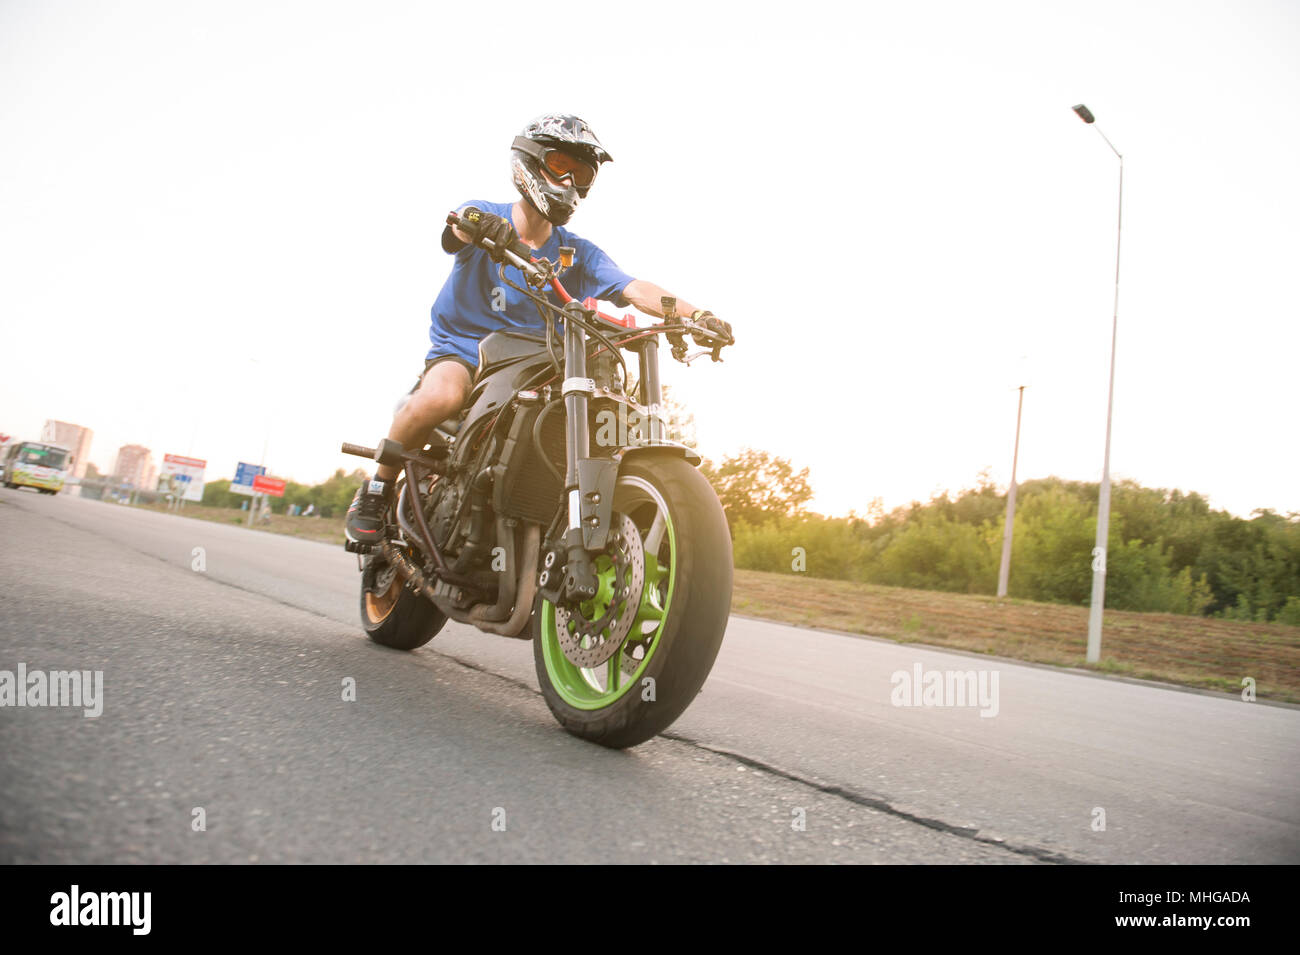 Ivano-Frankivsk, Ukraine - 9 août 2015 : Façade du motard assis sur le sport moto. Wearing blue shirt et casque de protection. Concept d'actif , extreme lifestyle. Banque D'Images